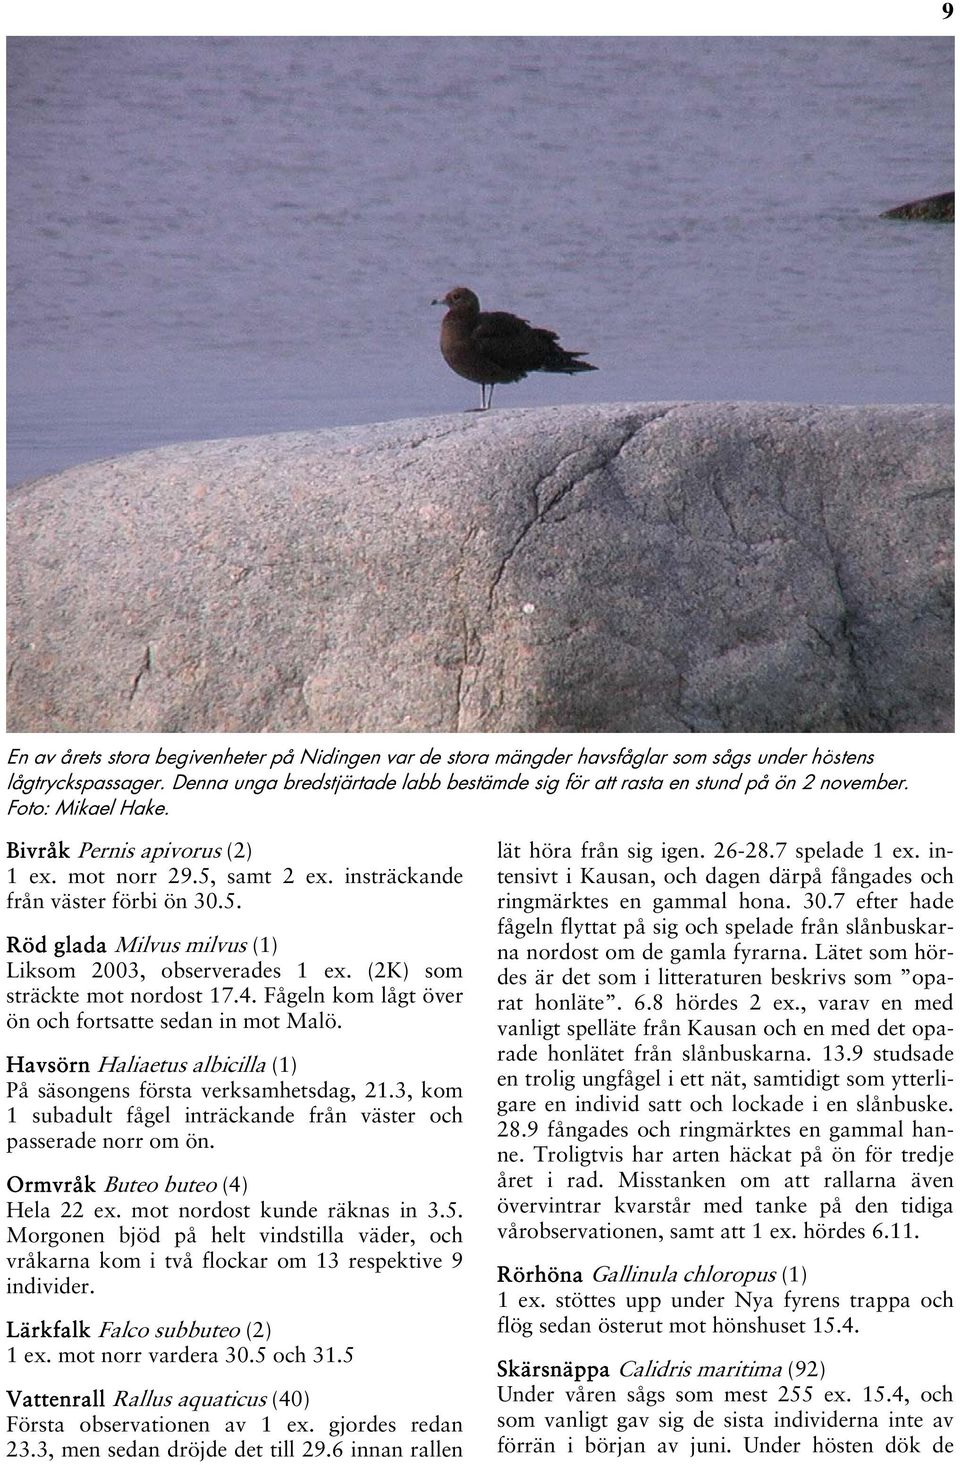 5. Röd glada Milvus milvus (1) Liksom 2003, observerades 1 ex. (2K) som sträckte mot nordost 17.4. Fågeln kom lågt över ön och fortsatte sedan in mot Malö.